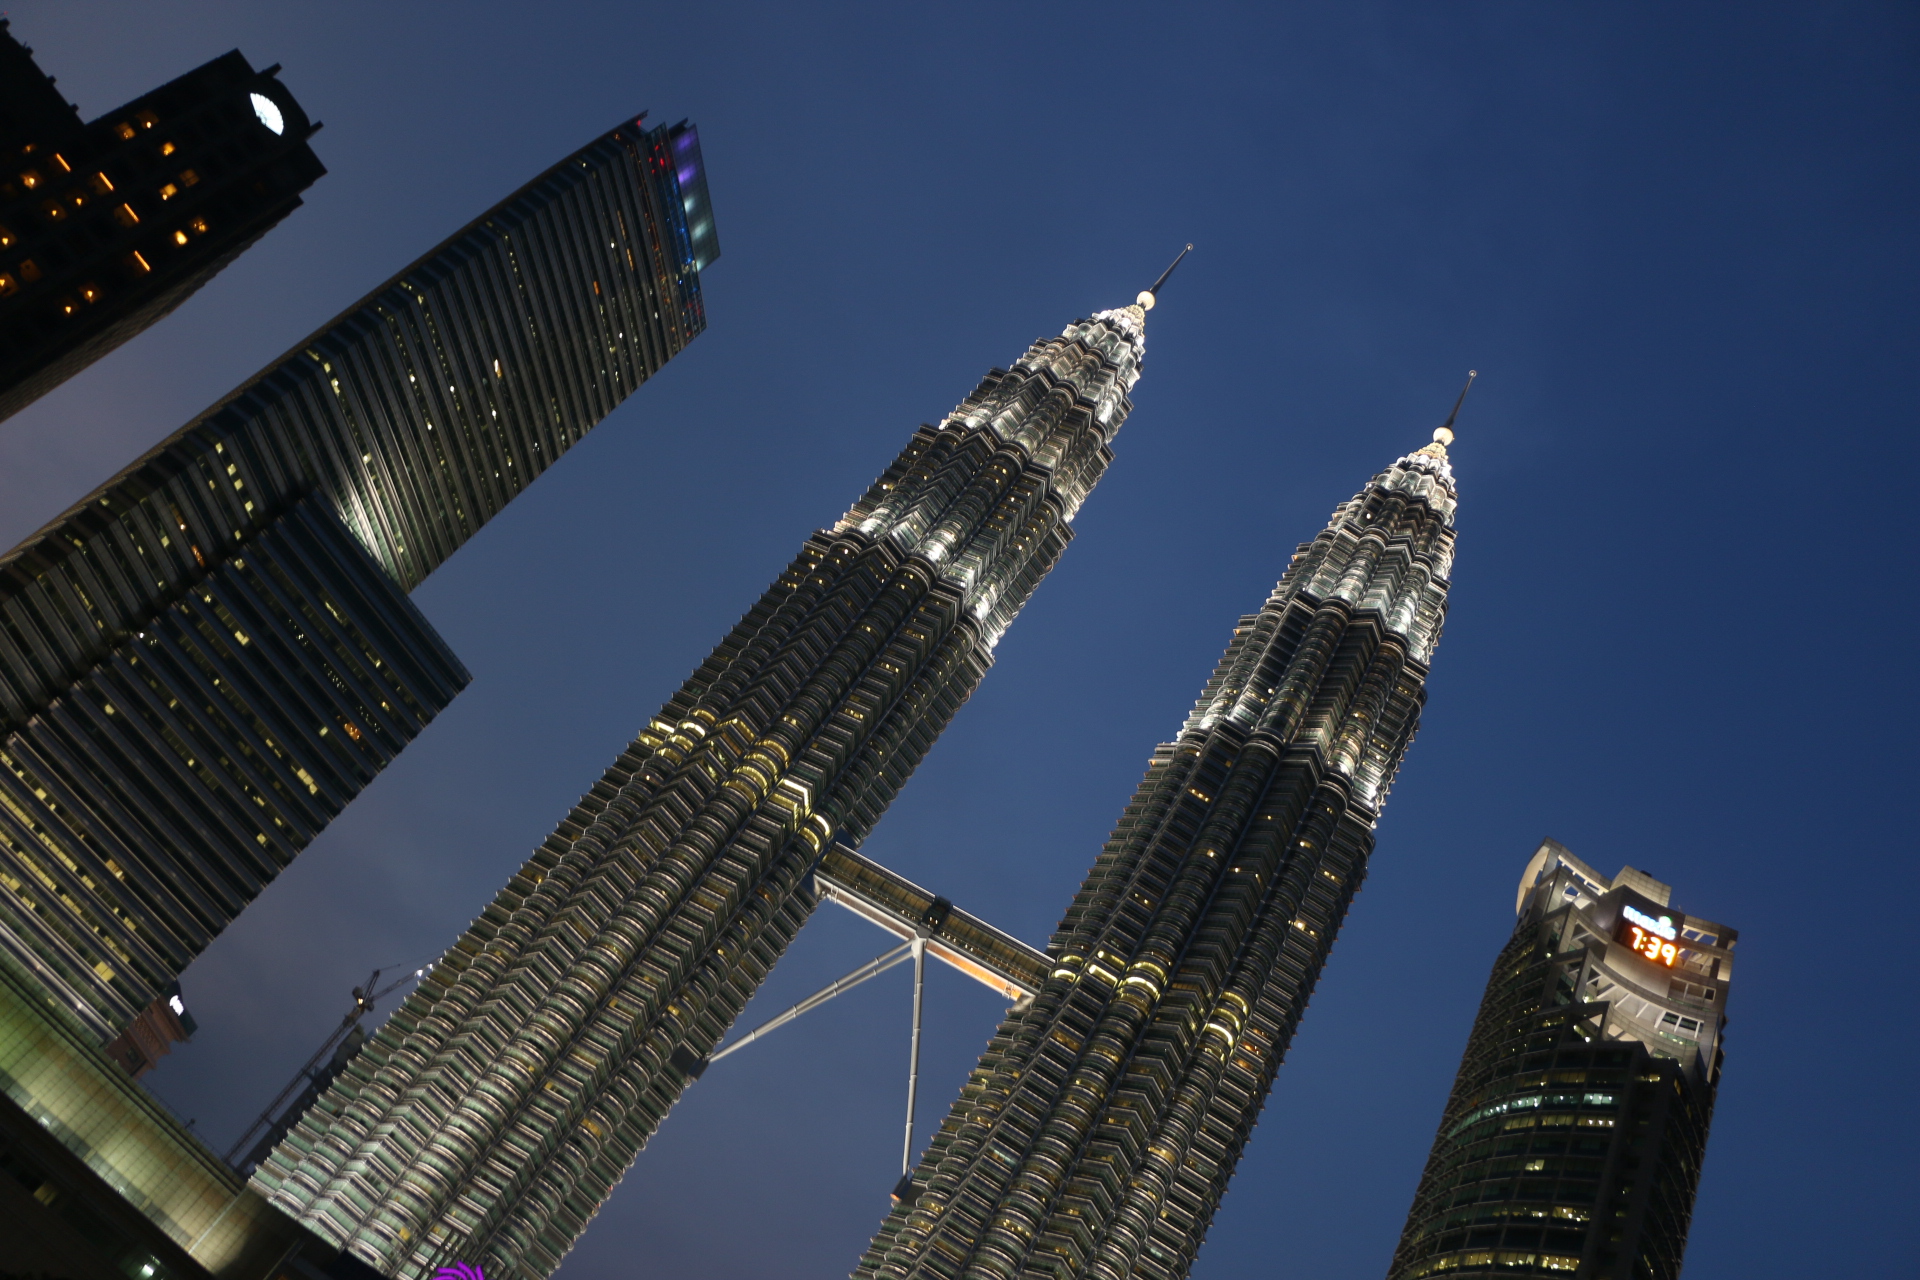 【携程攻略】吉隆坡双子塔景点,吉隆坡石油双子塔曾经也是世界最高的摩天大楼，坐落于吉隆坡市中市(K…